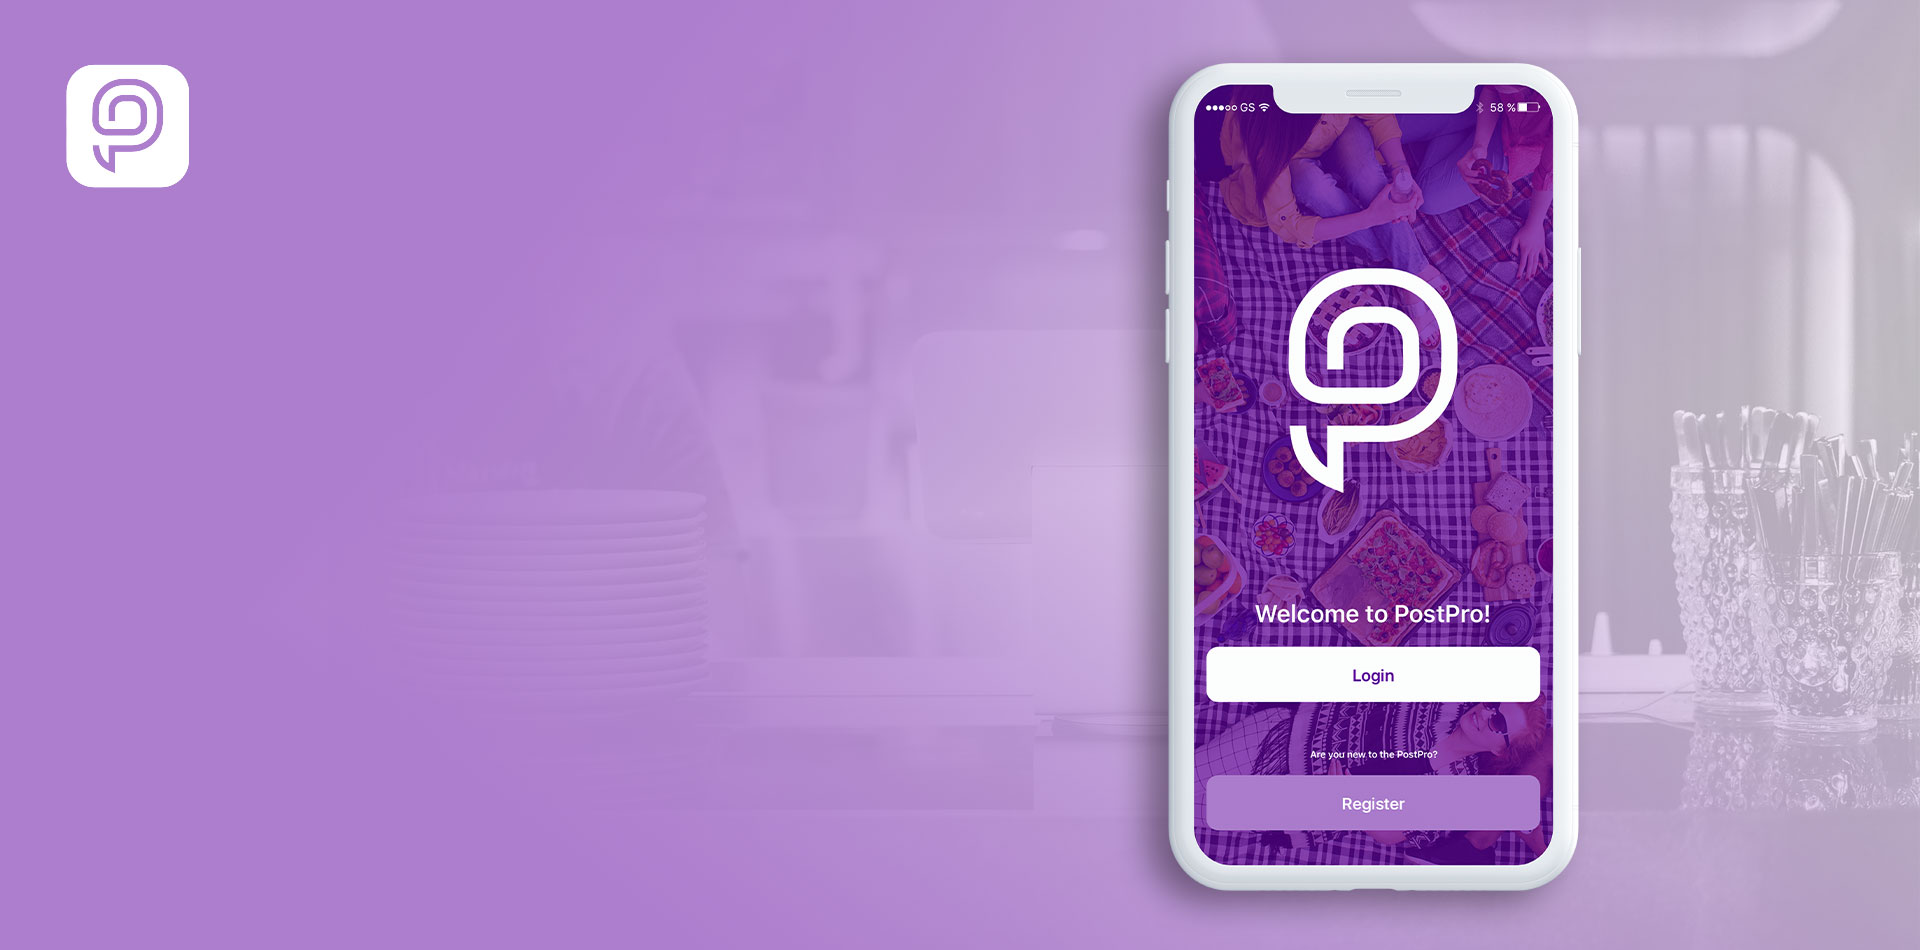                         PostPro to aplikacja mobilna łącząca program lojalnościowy z afiliacyjnym
                    